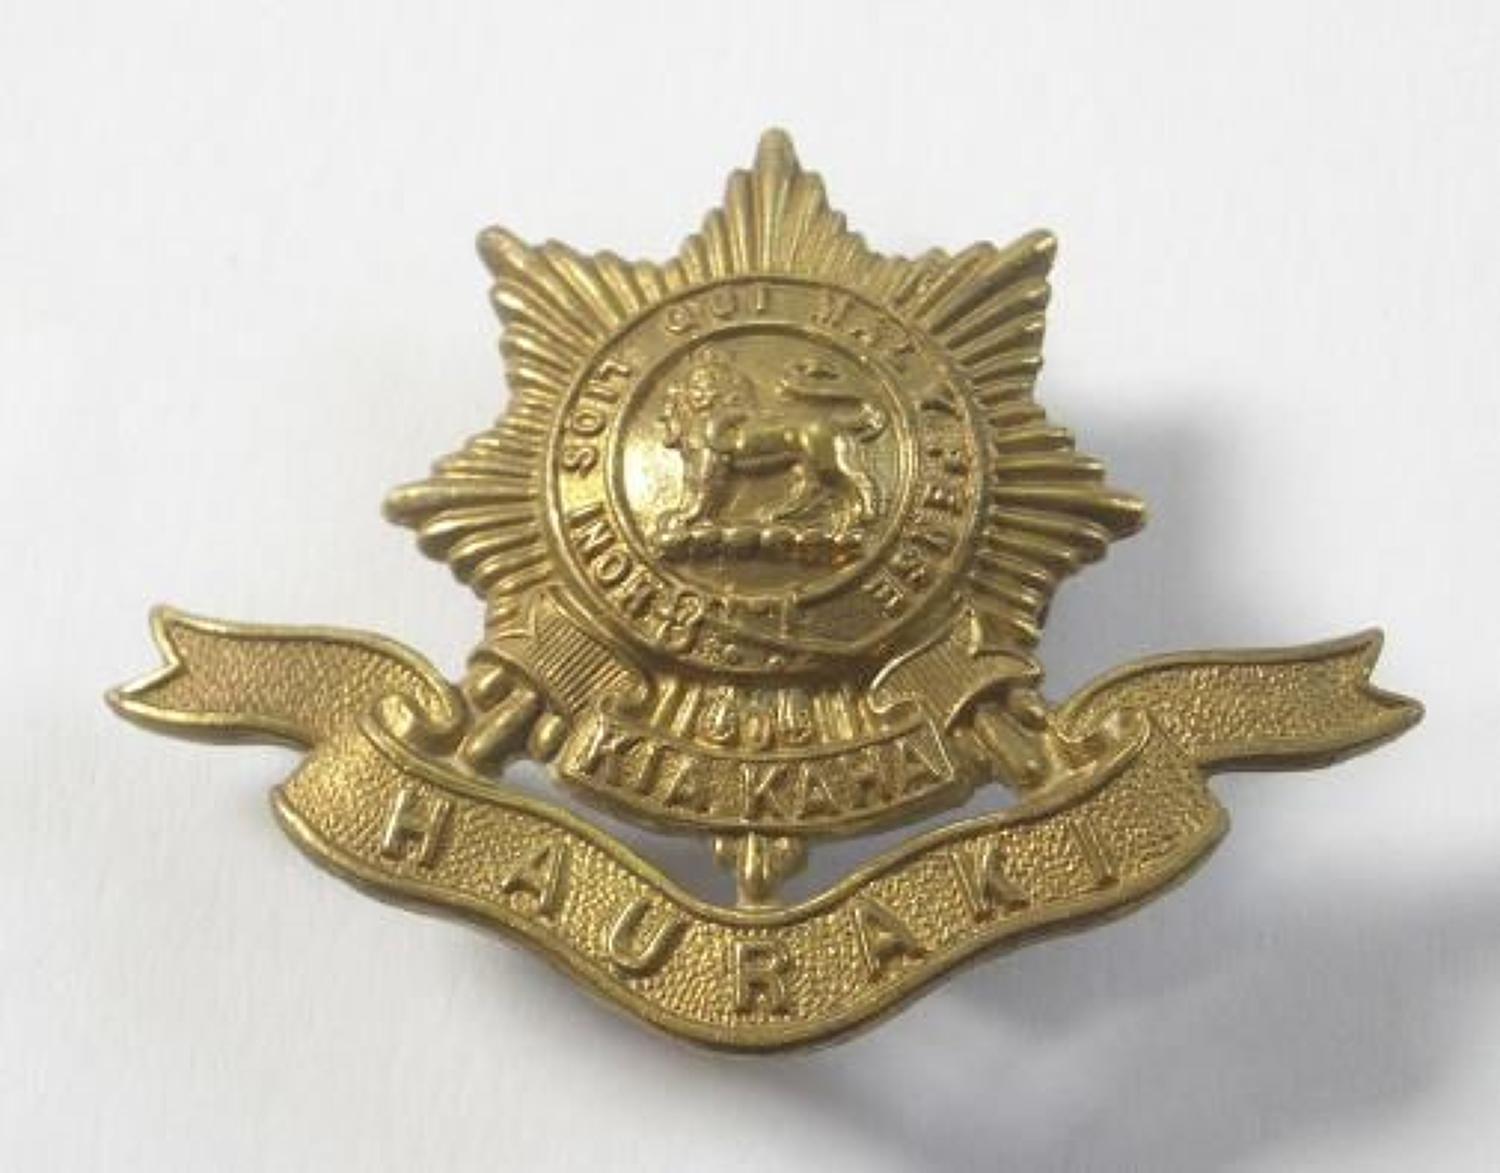 New Zealand Hauraki Regiment cap badge.